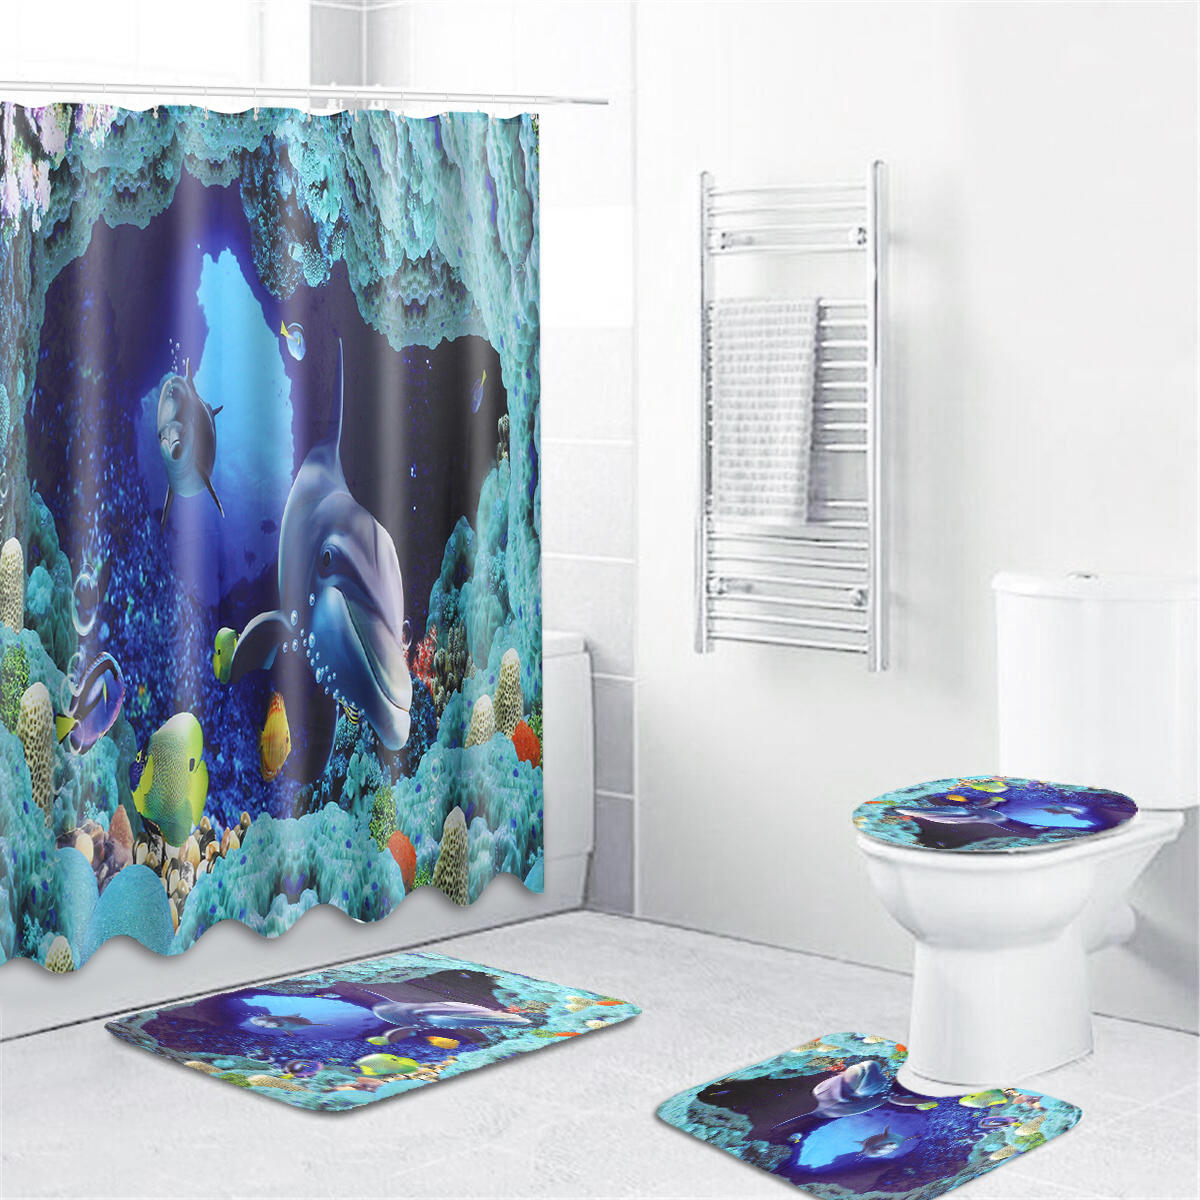 

Ocean Sea Dolphin Swimming Decor Bath Shower Curtain Waterproof Non-Slip Rug Pedestal Rug Lid Toilet Cover Bath Mat Show